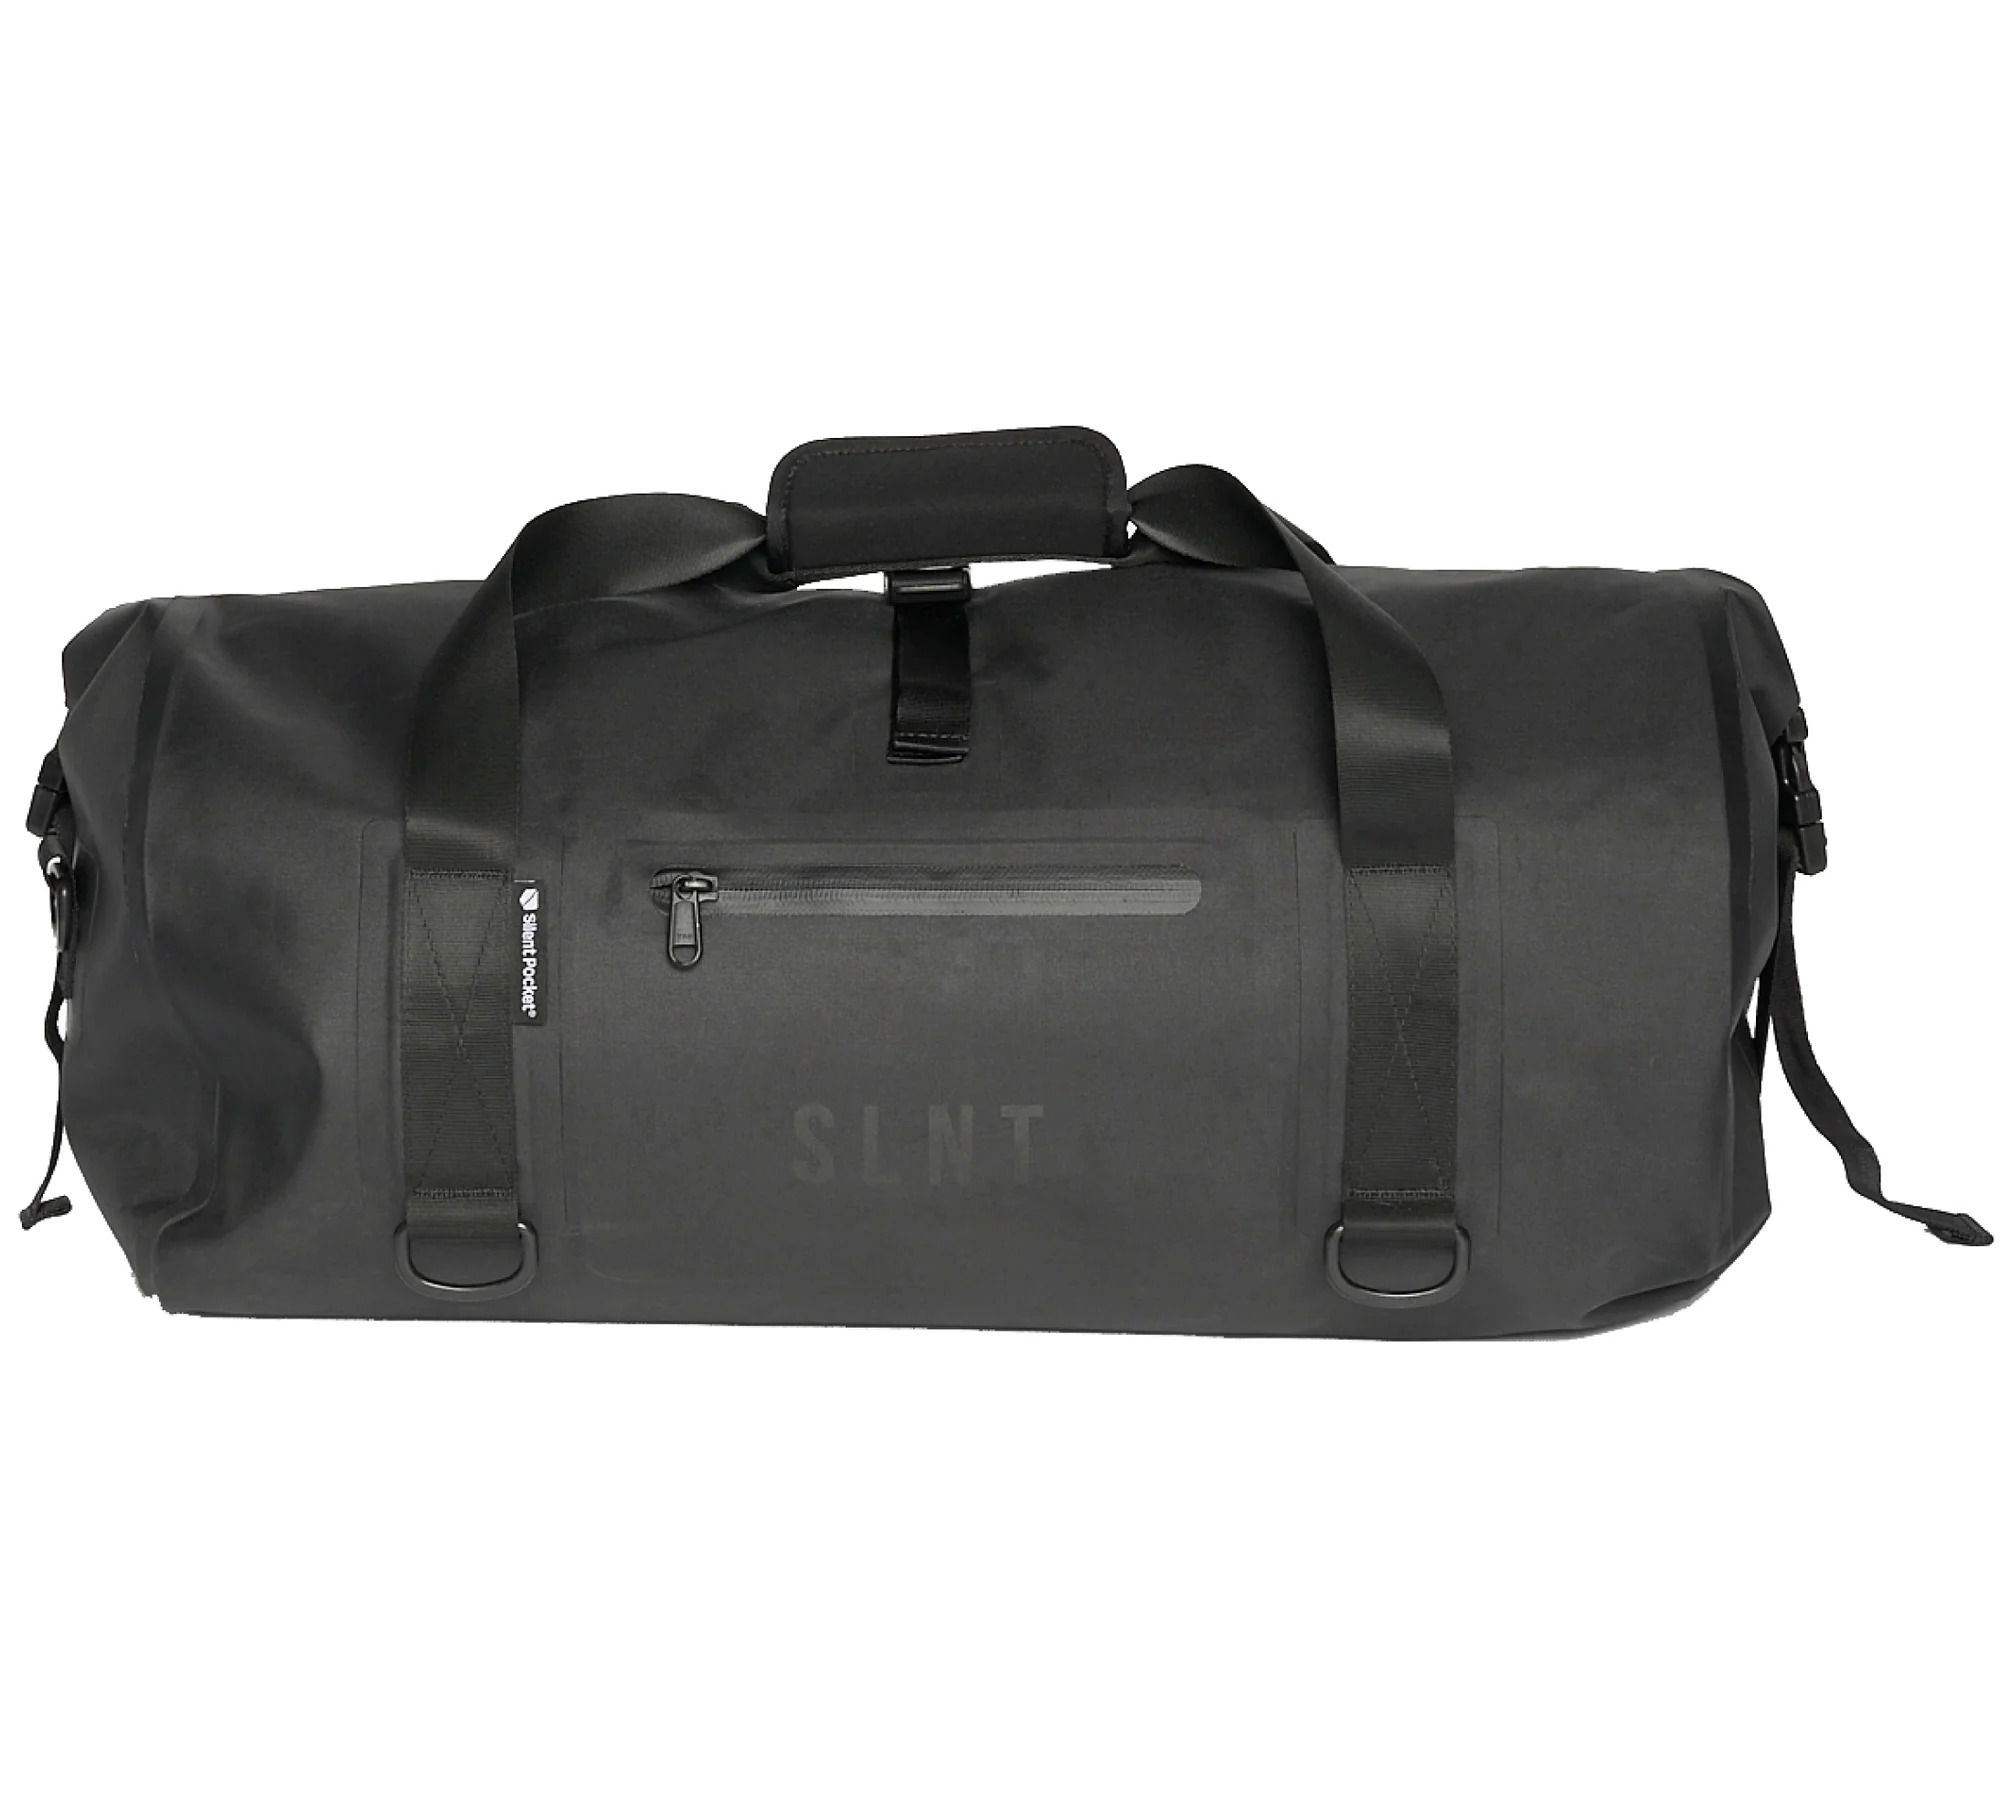 Dry Bag - SLNT®